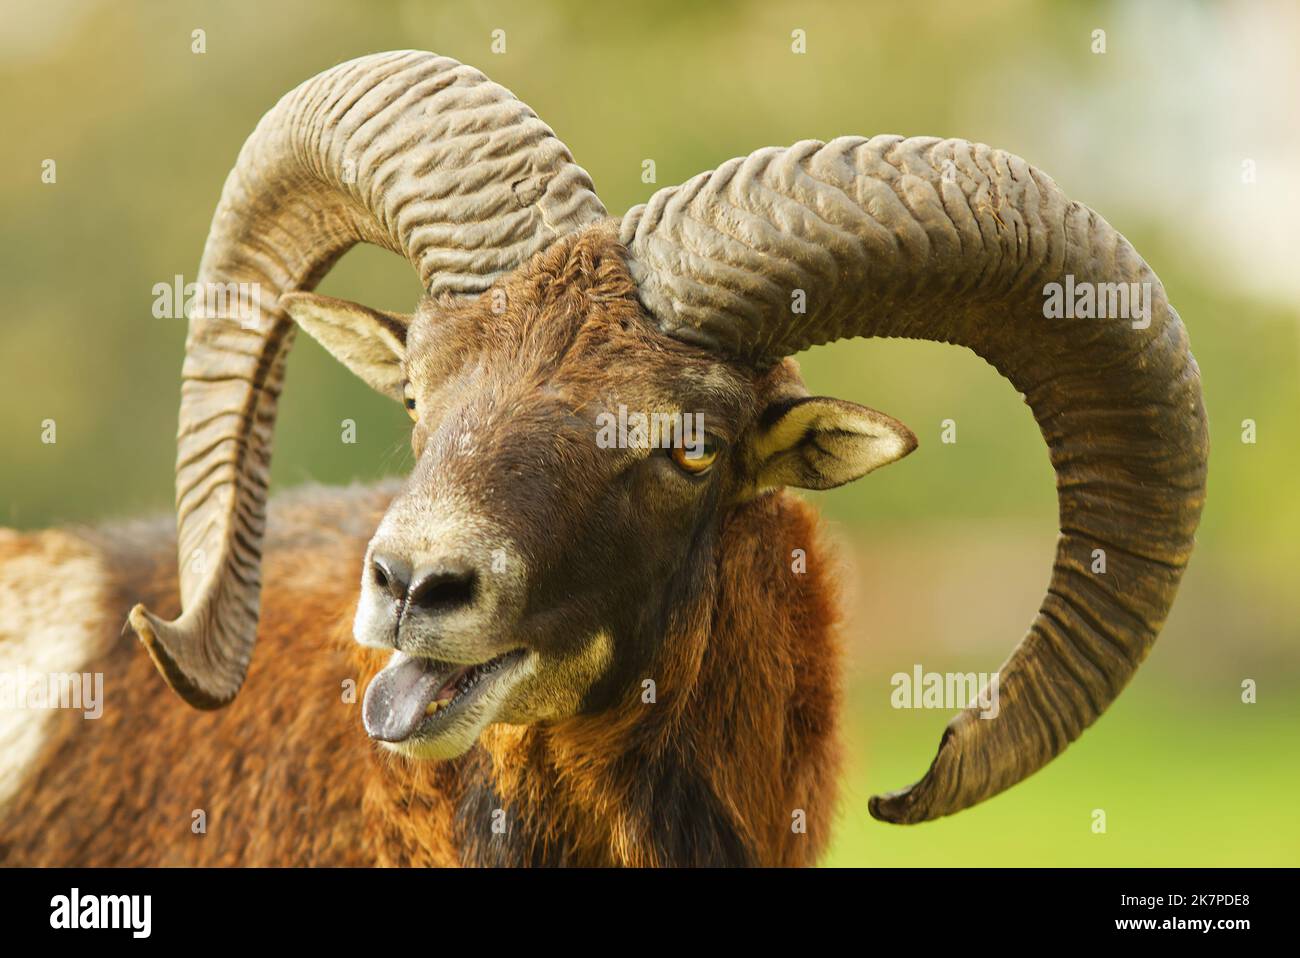 Gros plan de la tête, portrait d'un mâle en mouflon avec de grandes cornes, tête ouverte et languette saillante. Mouflon européen, musimon ovis aries. Banque D'Images